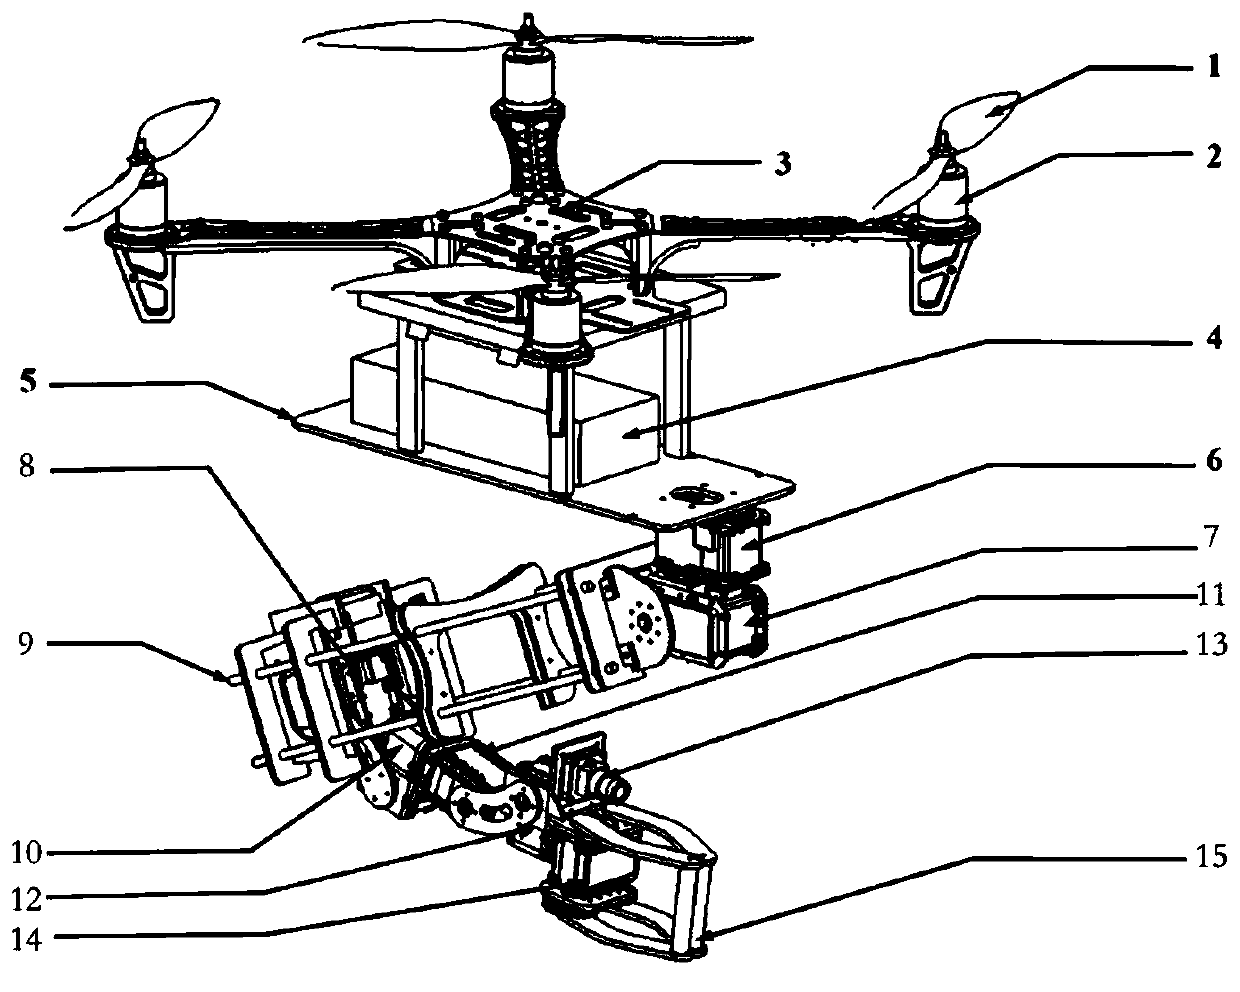 Natural property based vision servo grabbing method of flying mechanical arm